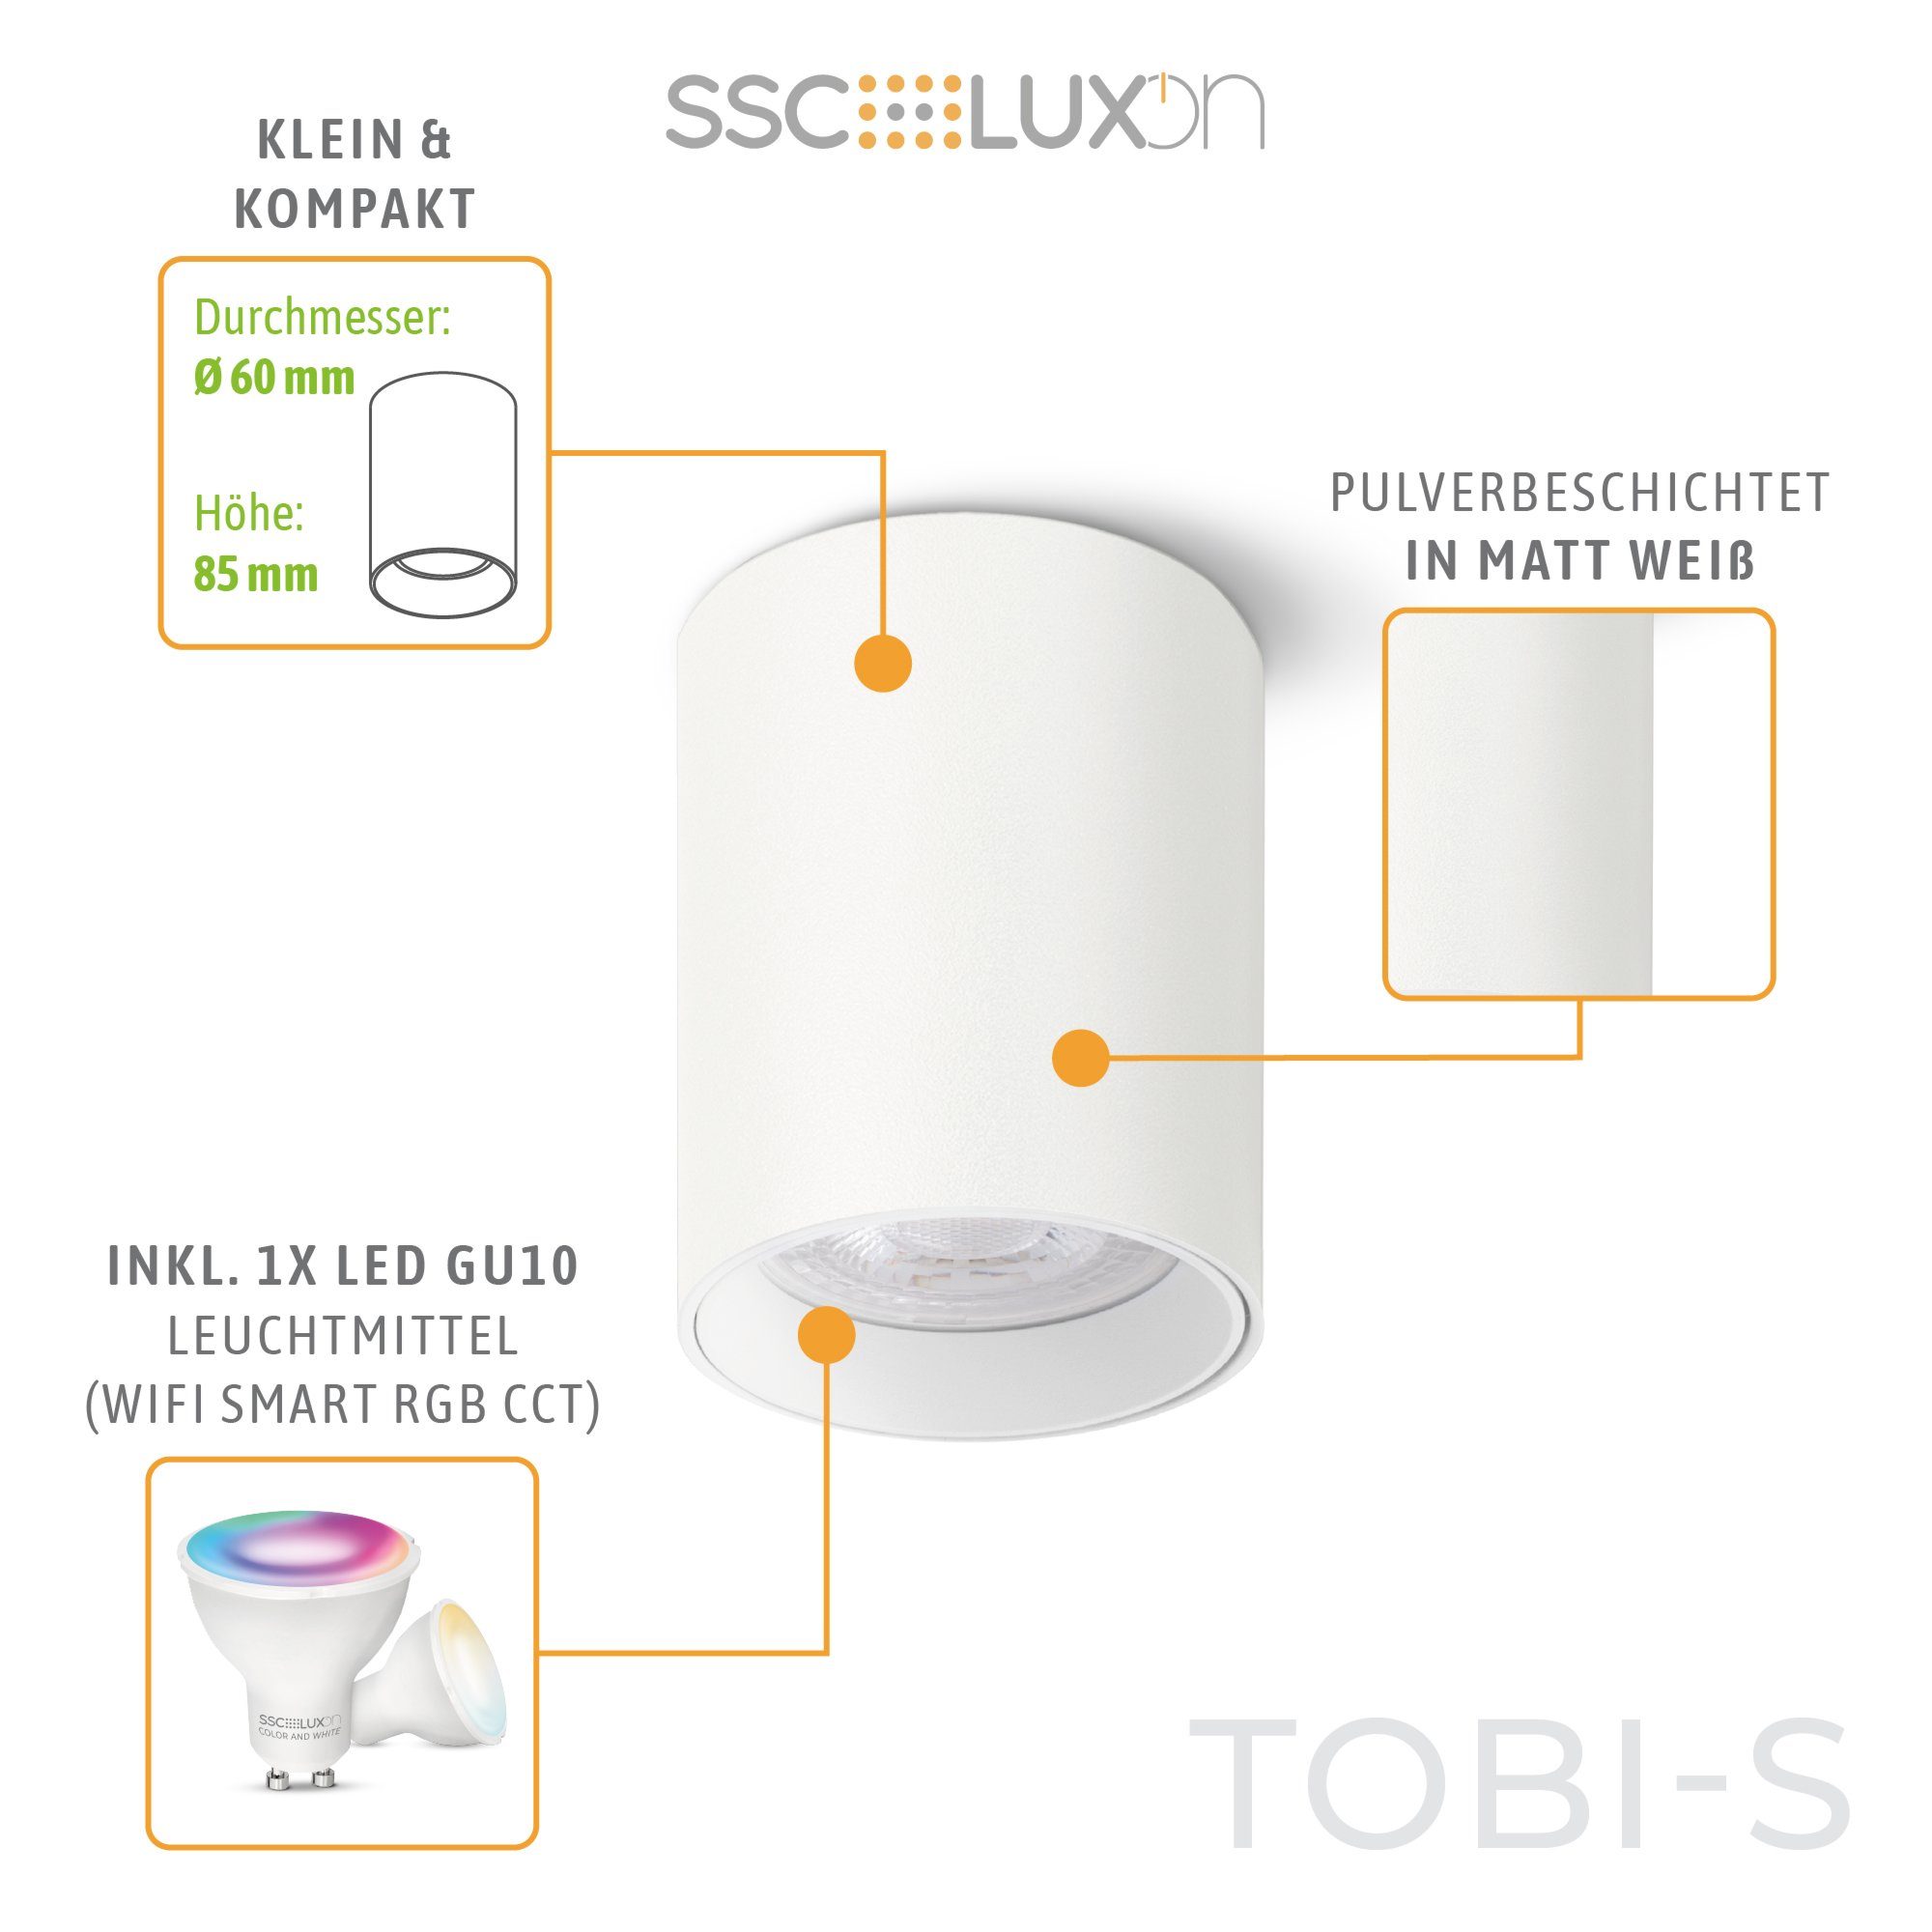 SSC-LUXon Aufbauleuchte TOBI-S in RGB mit Aufbauspot RGB Decken Lampe, GU10 Mini weiss WLAN LED